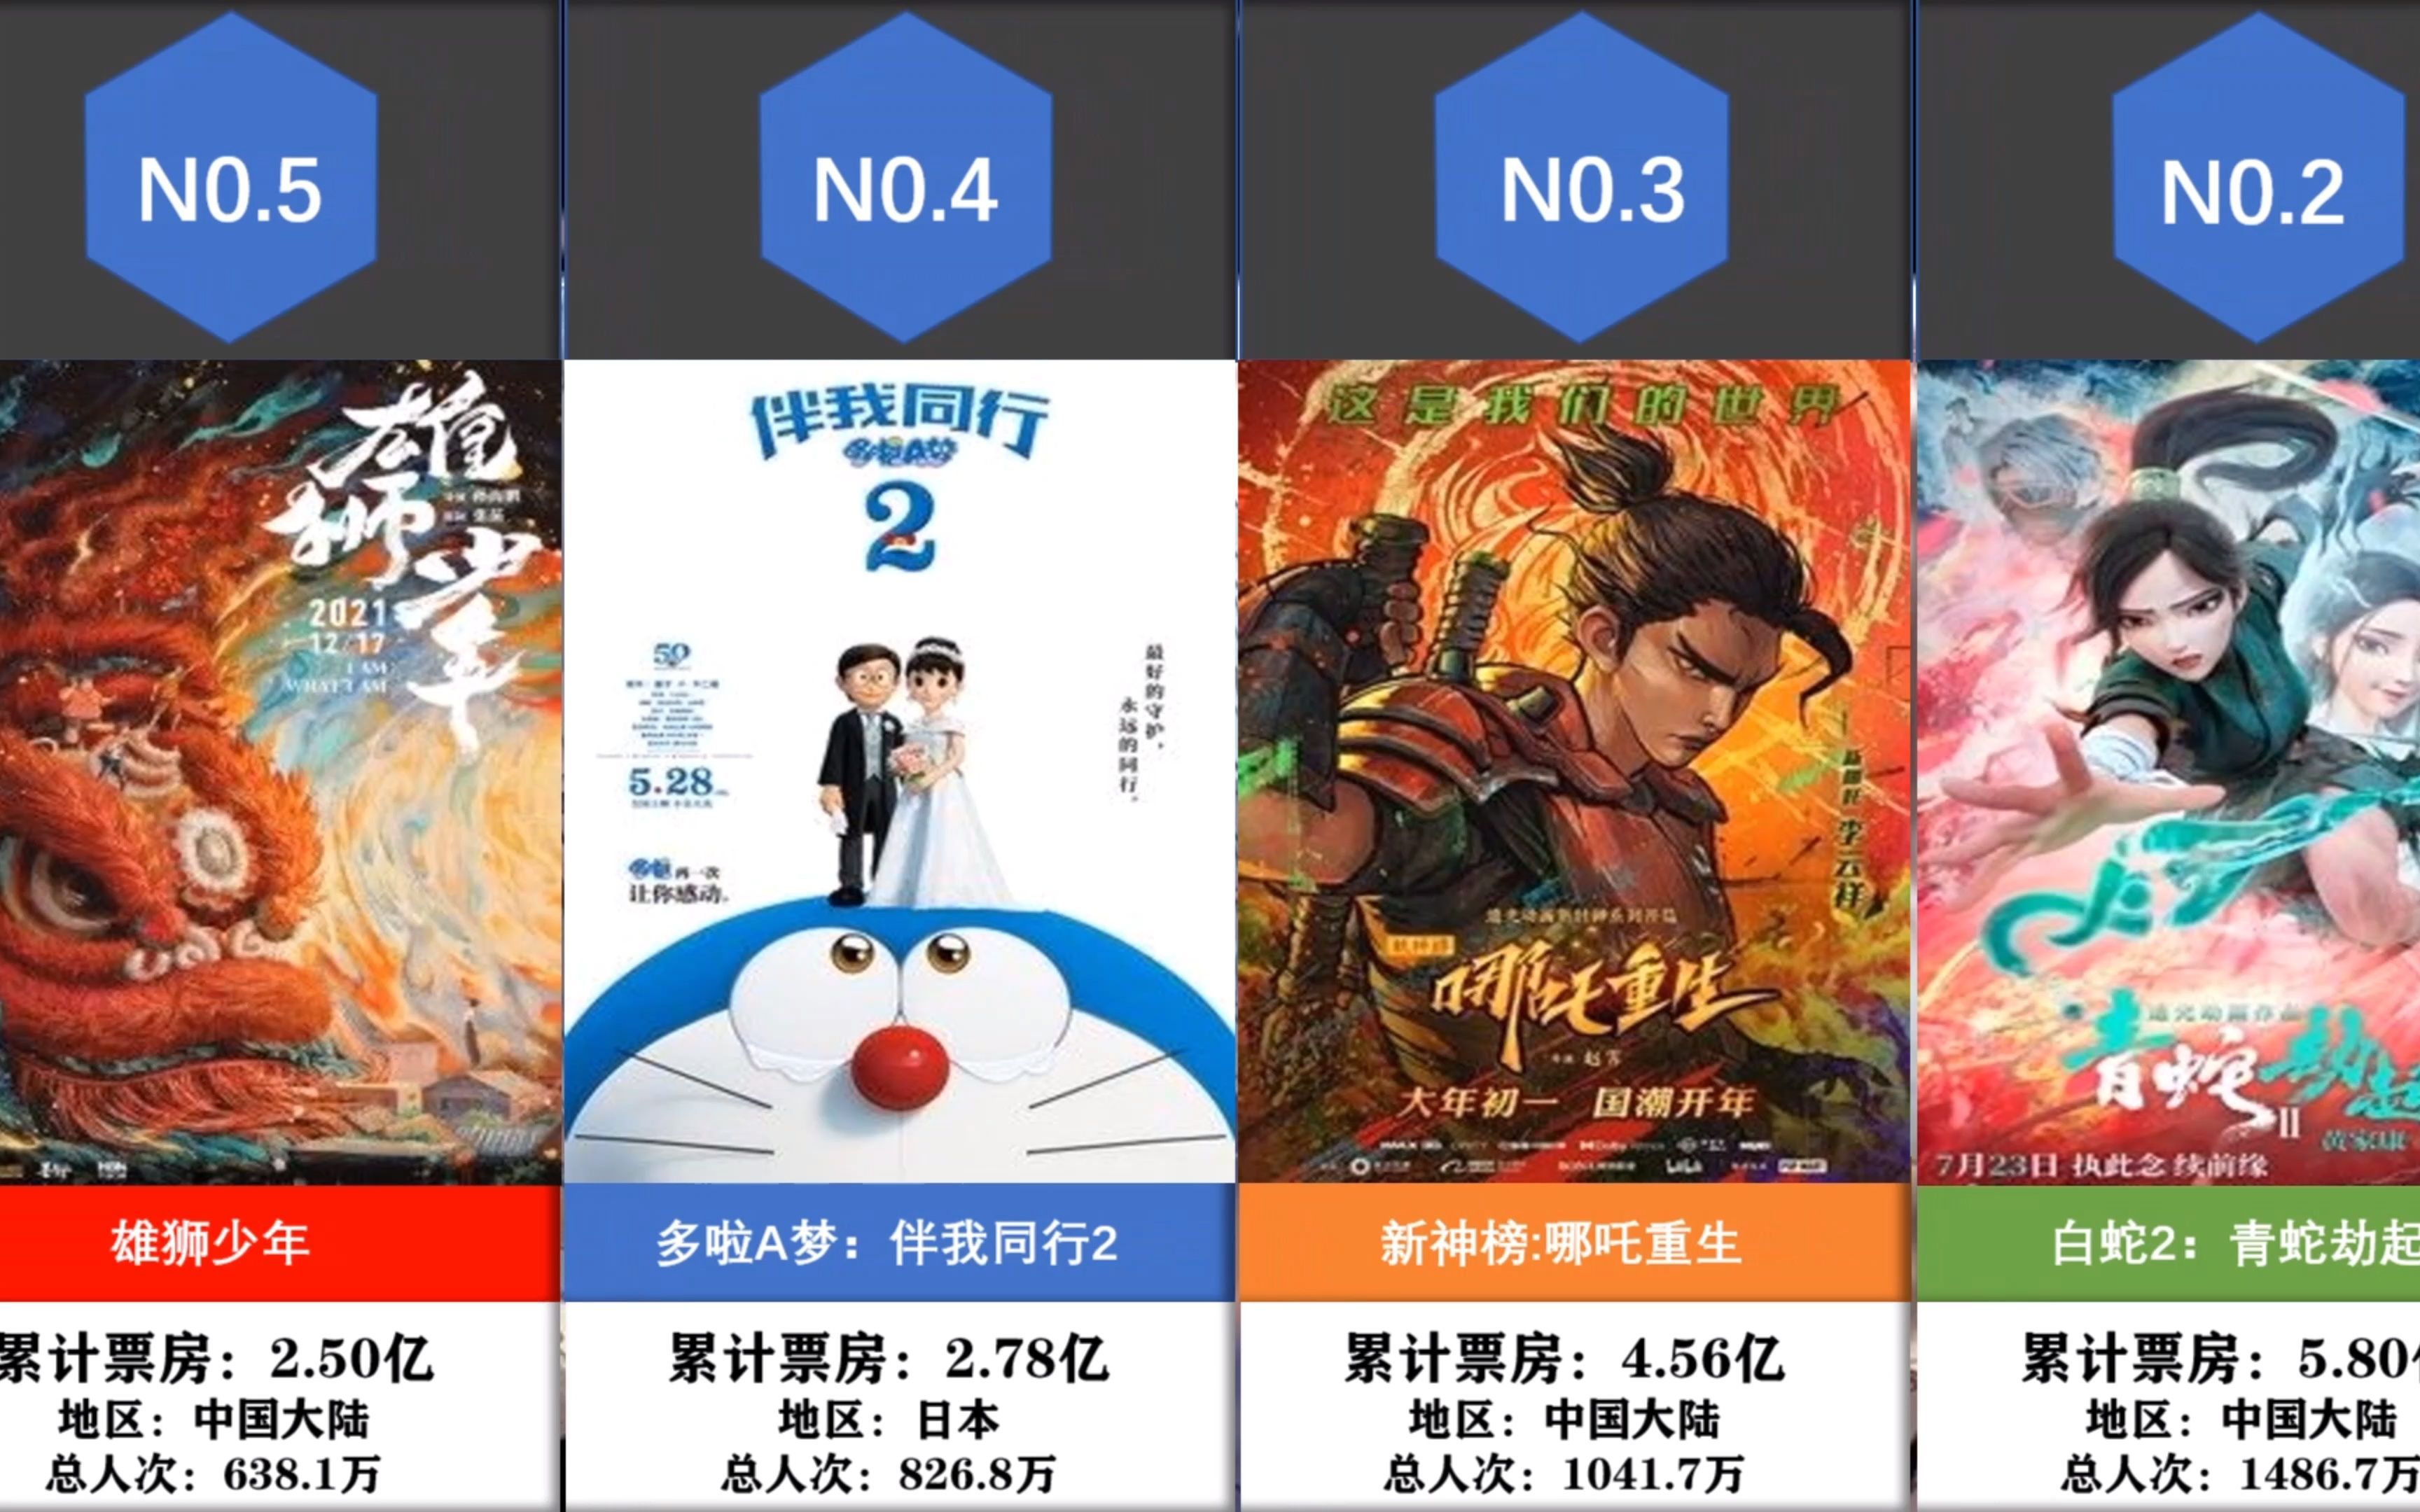 2021中国大陆动画电影票房排名前20